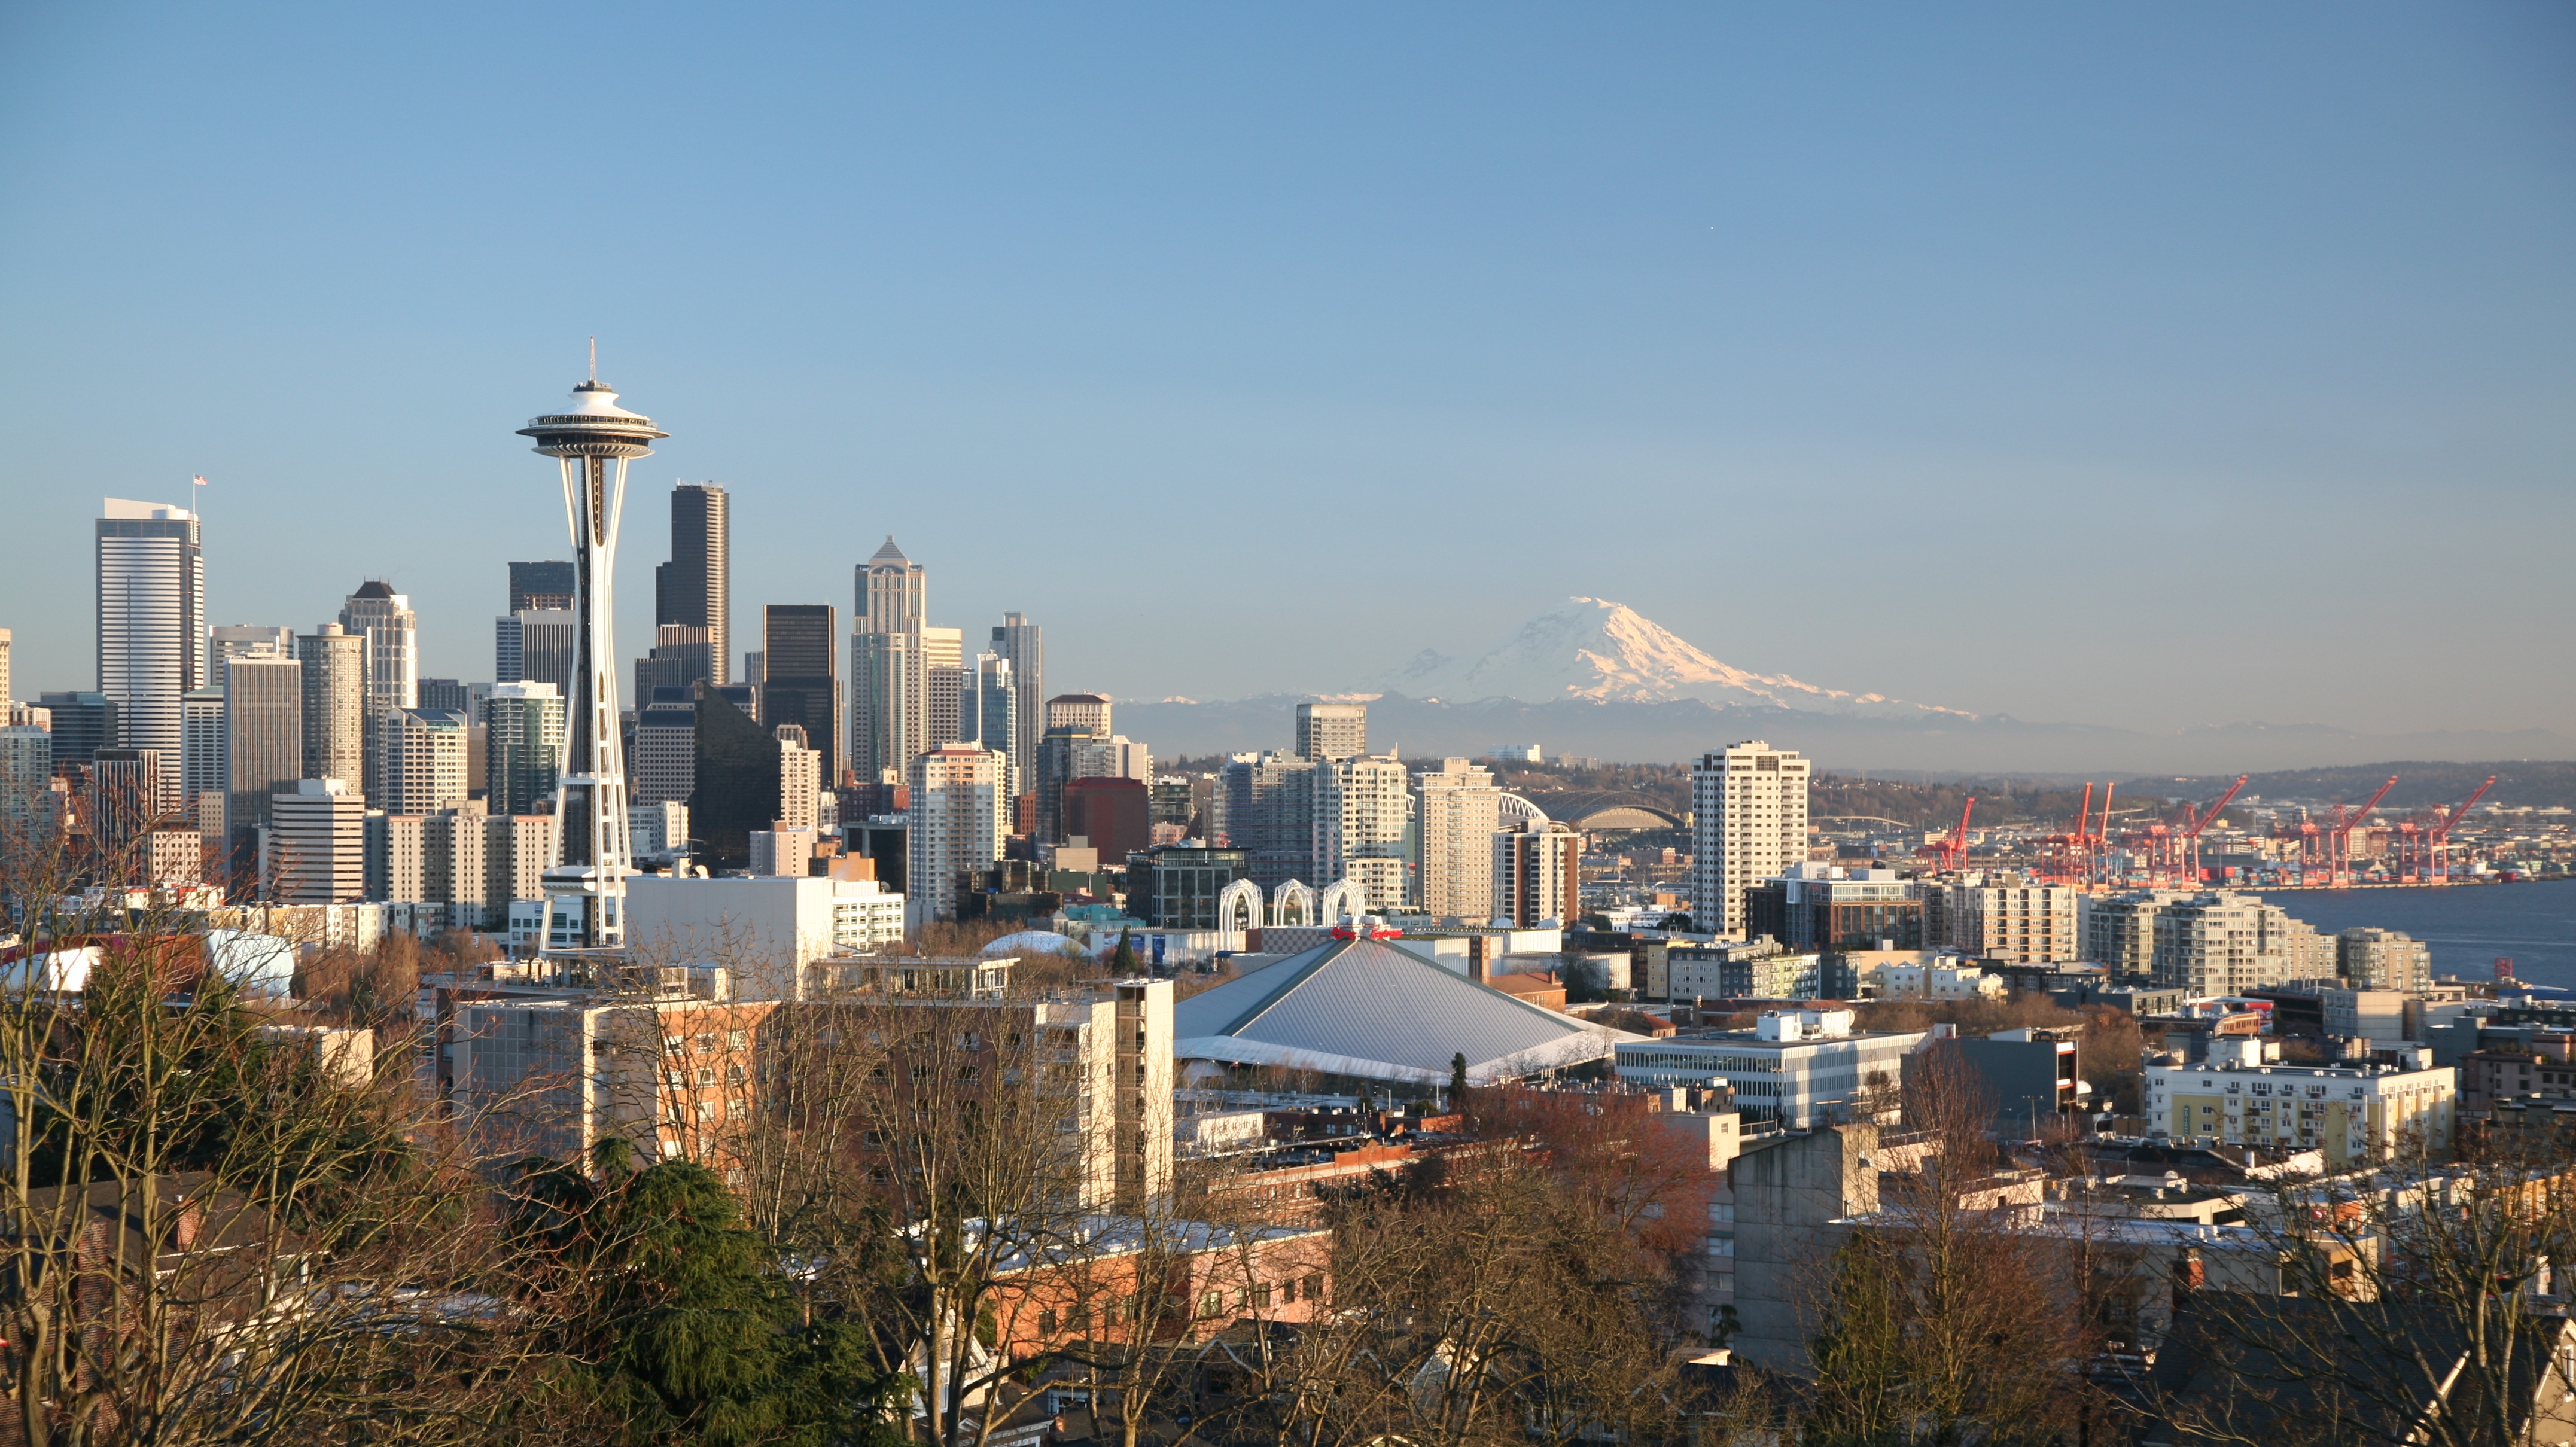 File:Seattle 4.jpg - Wikimedia Commons